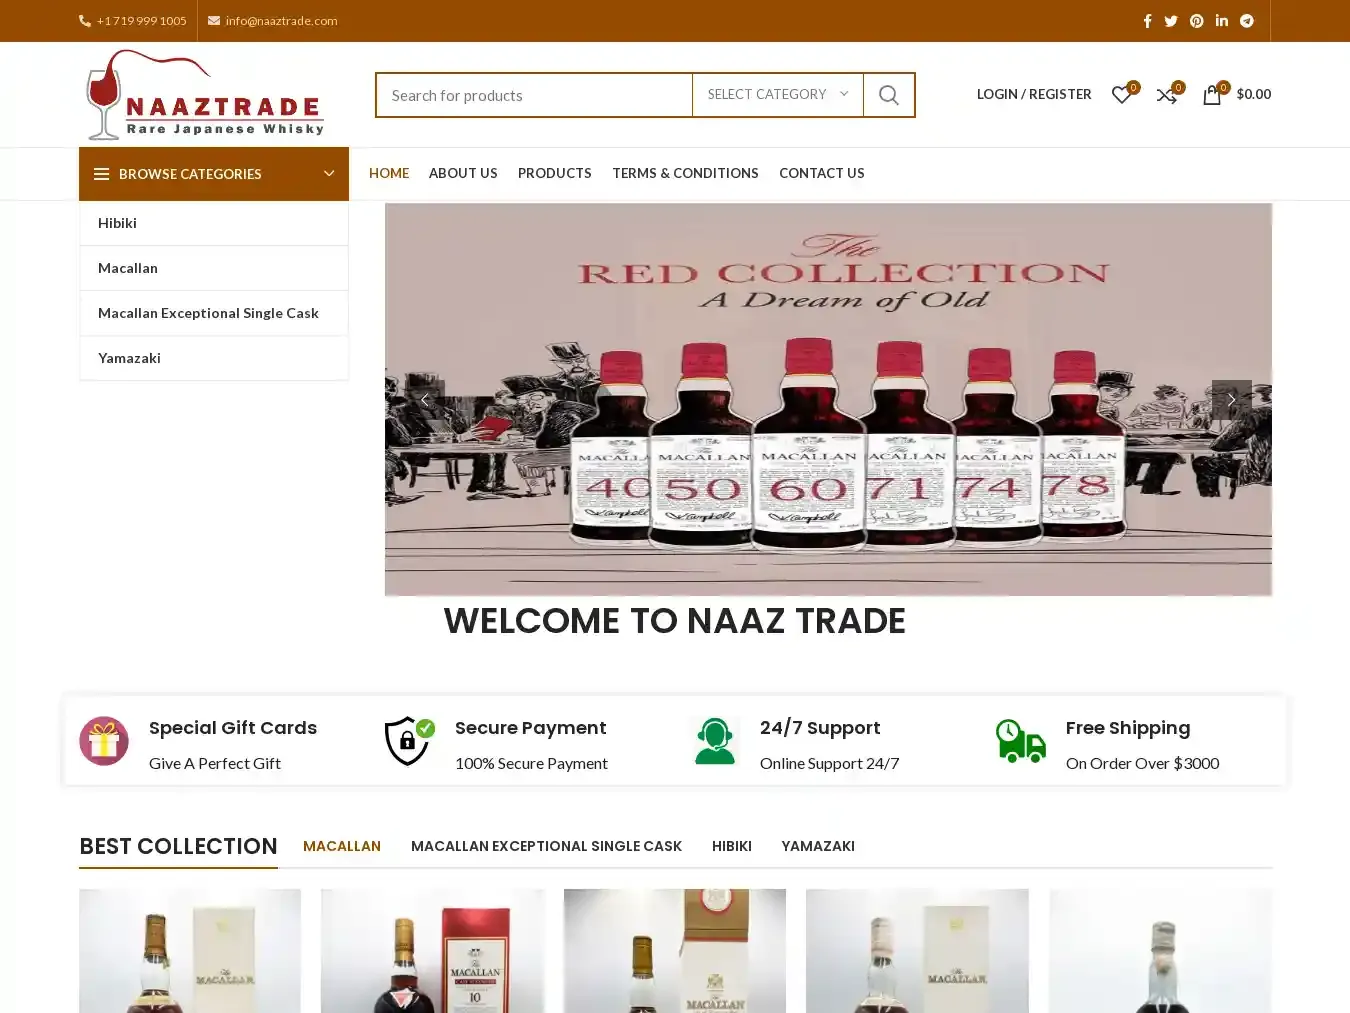 Naaztrade.com Fraudulent Whisky website.